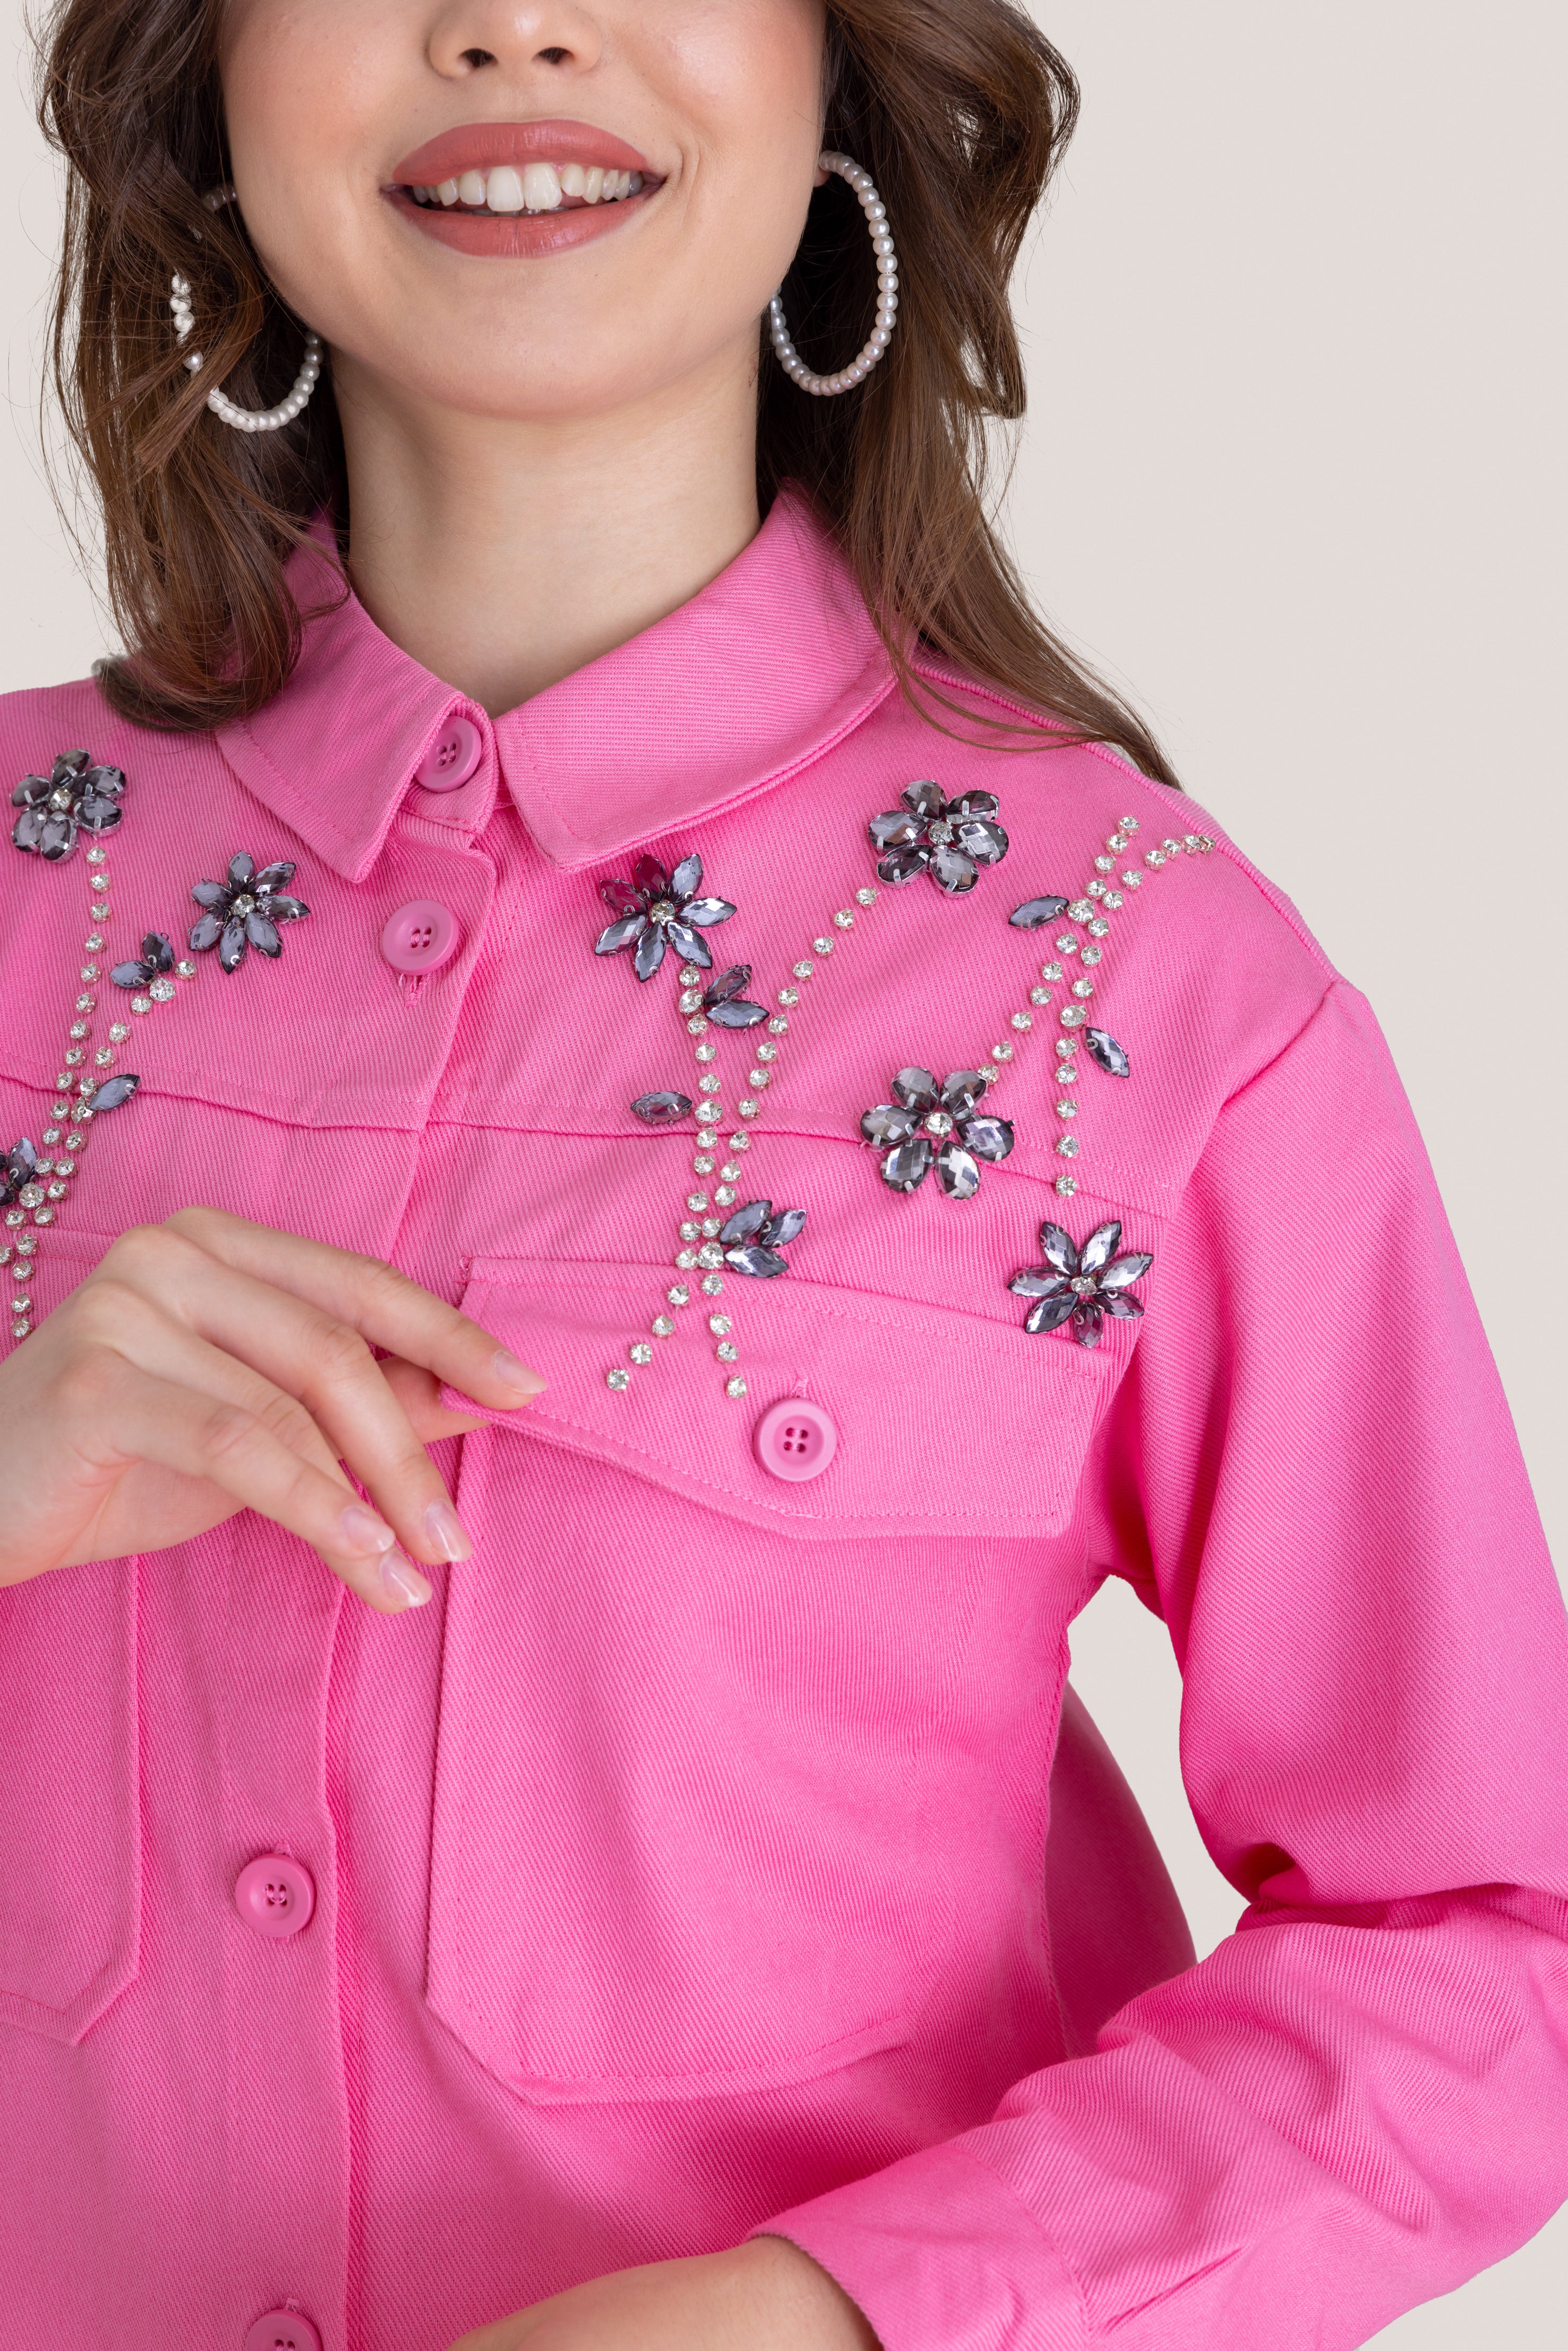 Floral Jewel Patterned Embellished Top - Pink